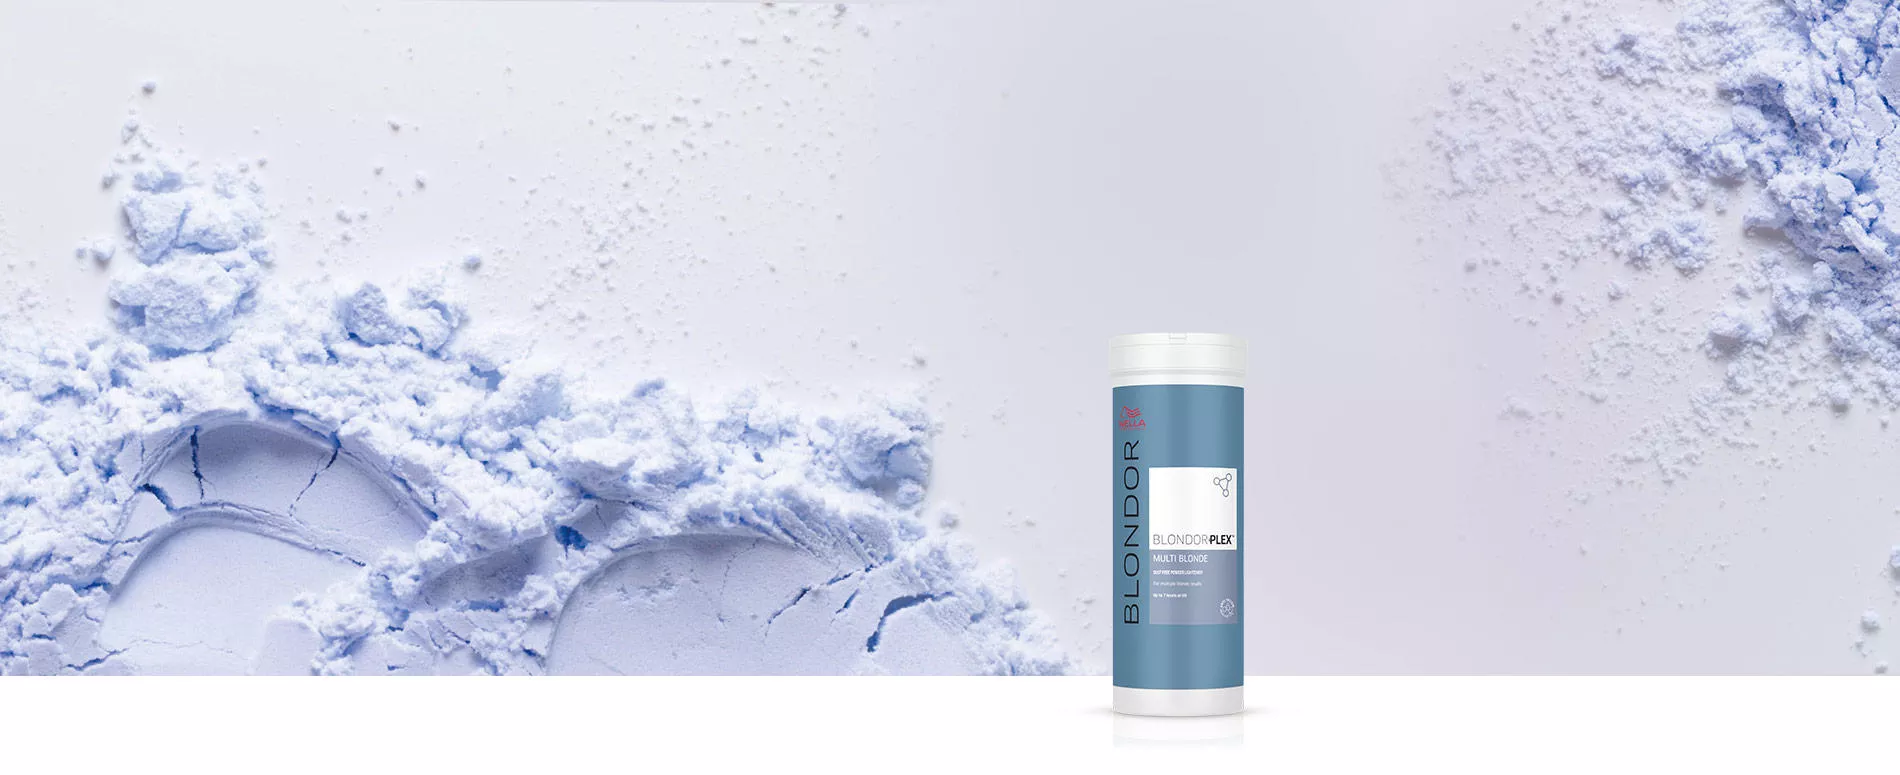 Fotografía del producto BlondorPlex rodeado por polvo azul sobre un fondo gris